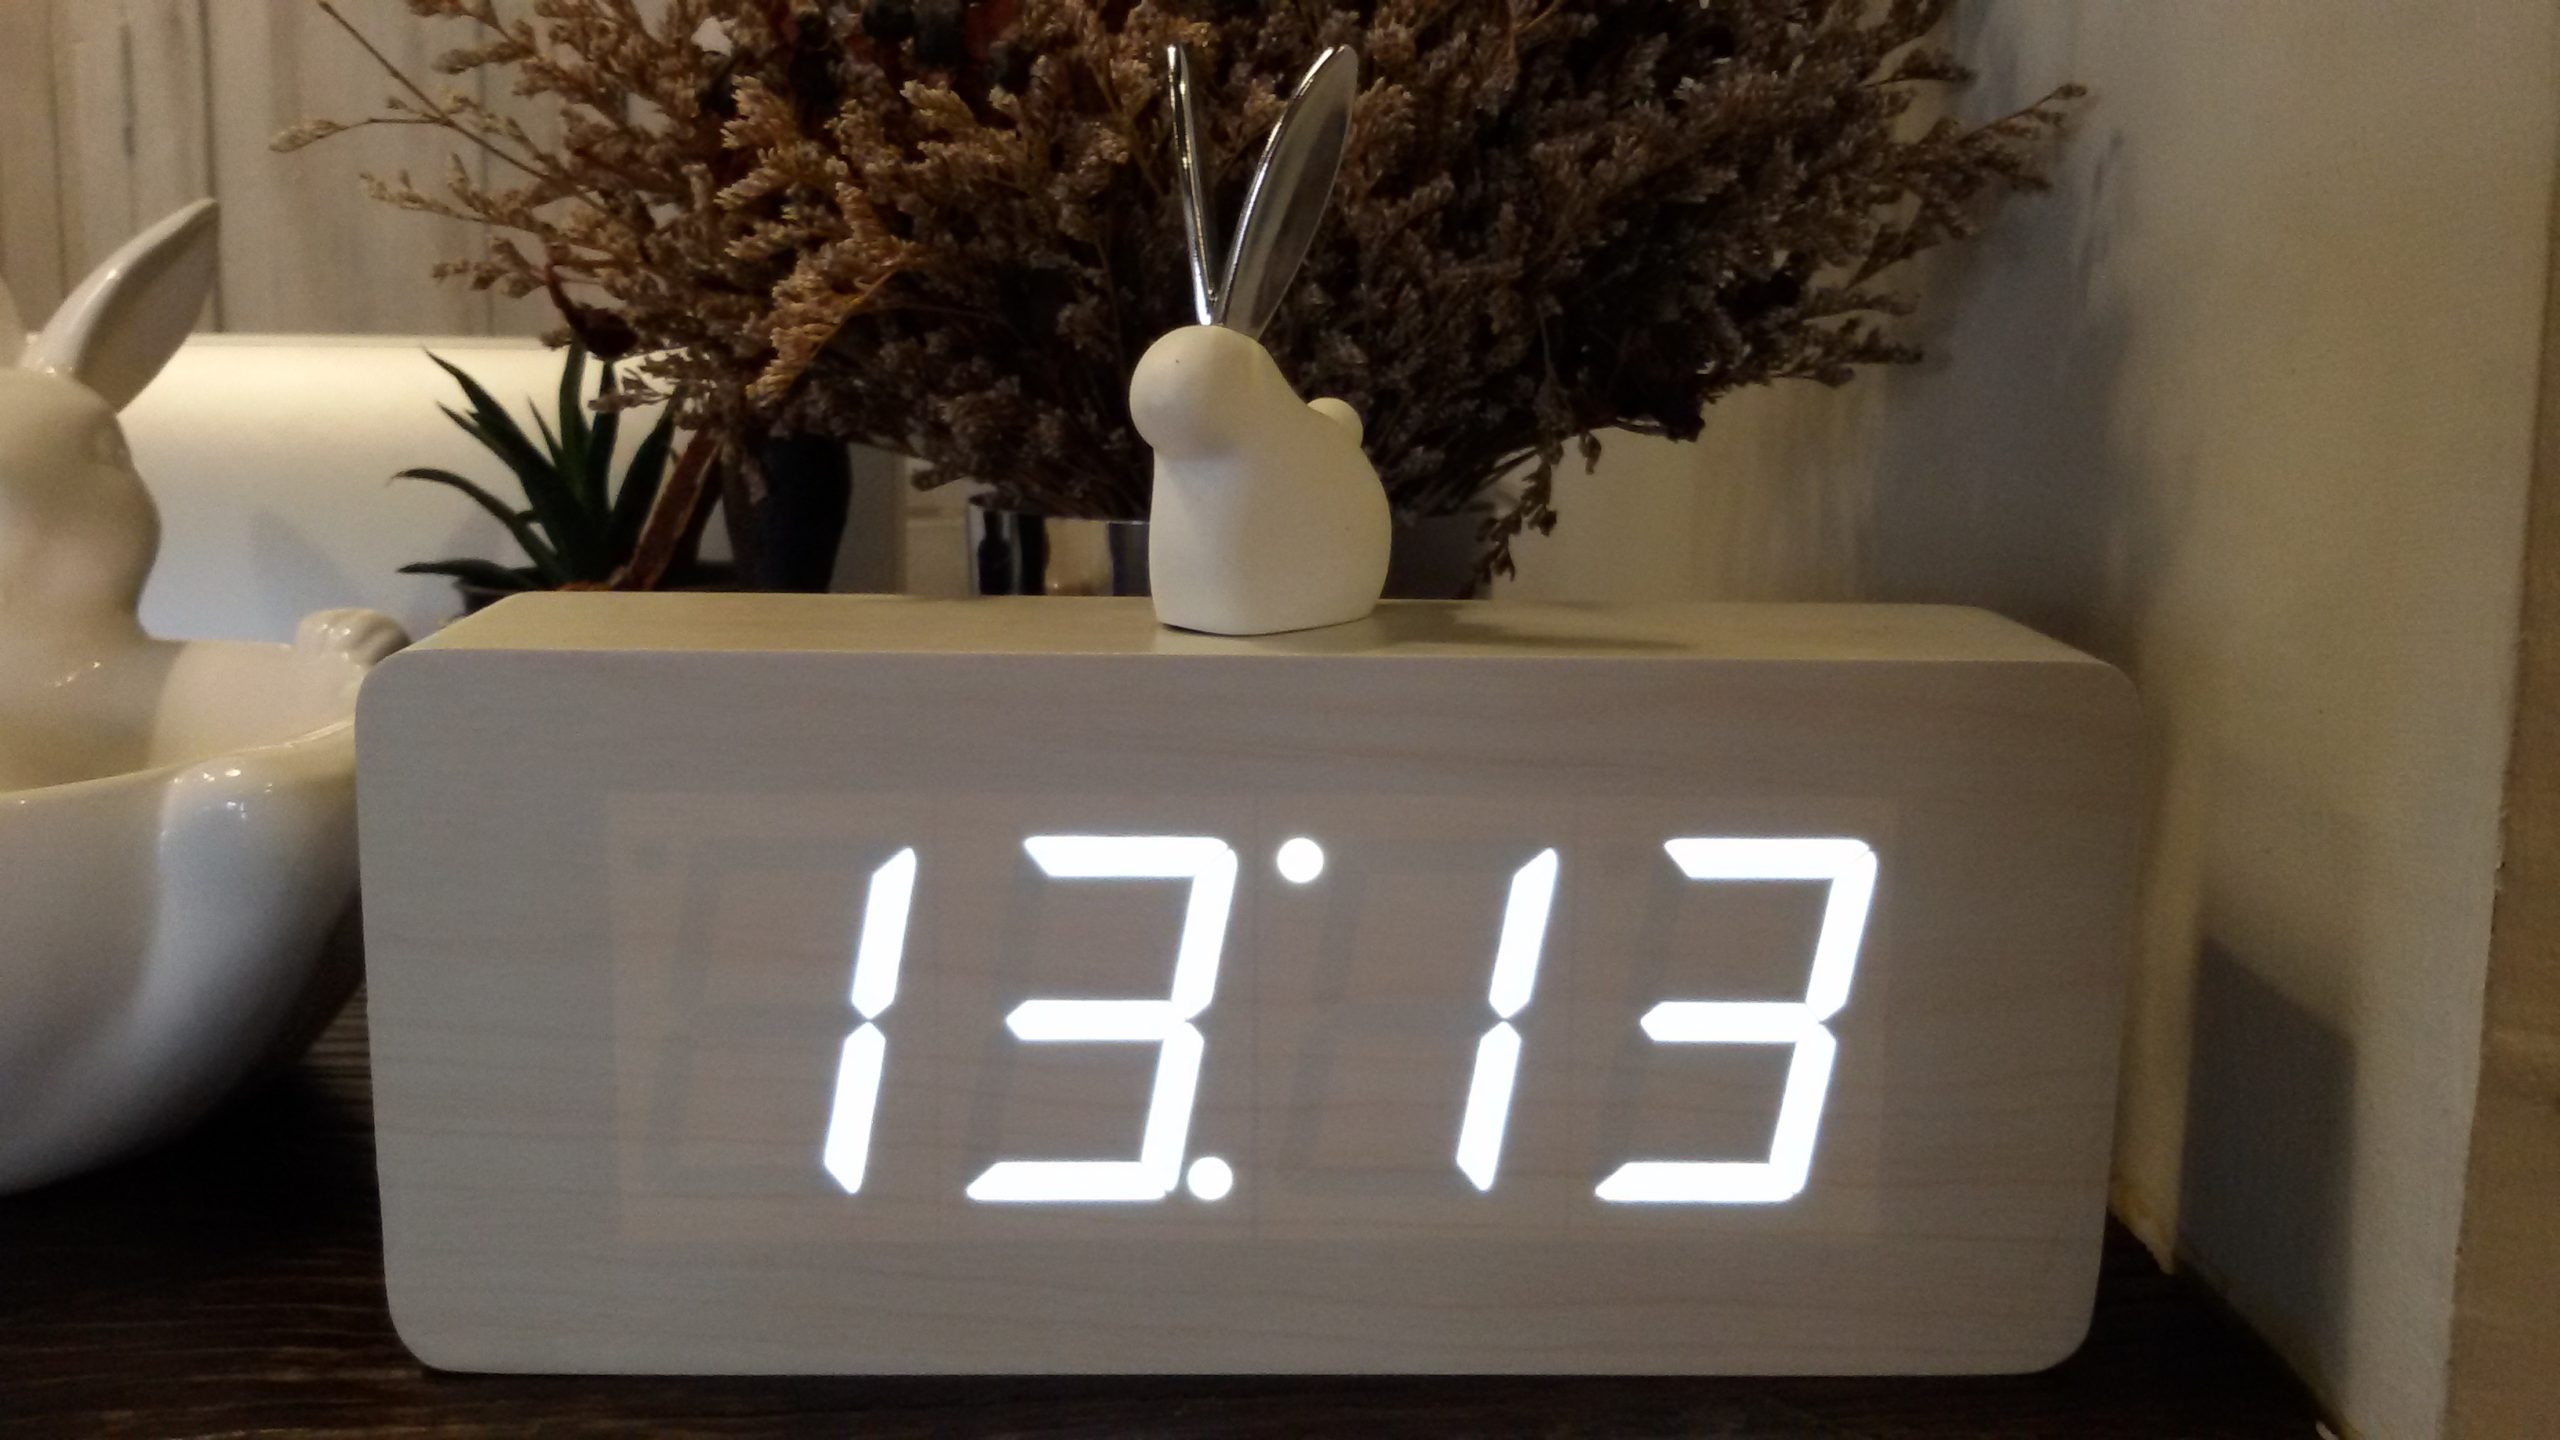 Це на часах. 11 11 Электронные часы. Одинаковые цифры на часах. Одинаковые цифры часов. Цифры на электронных часах.